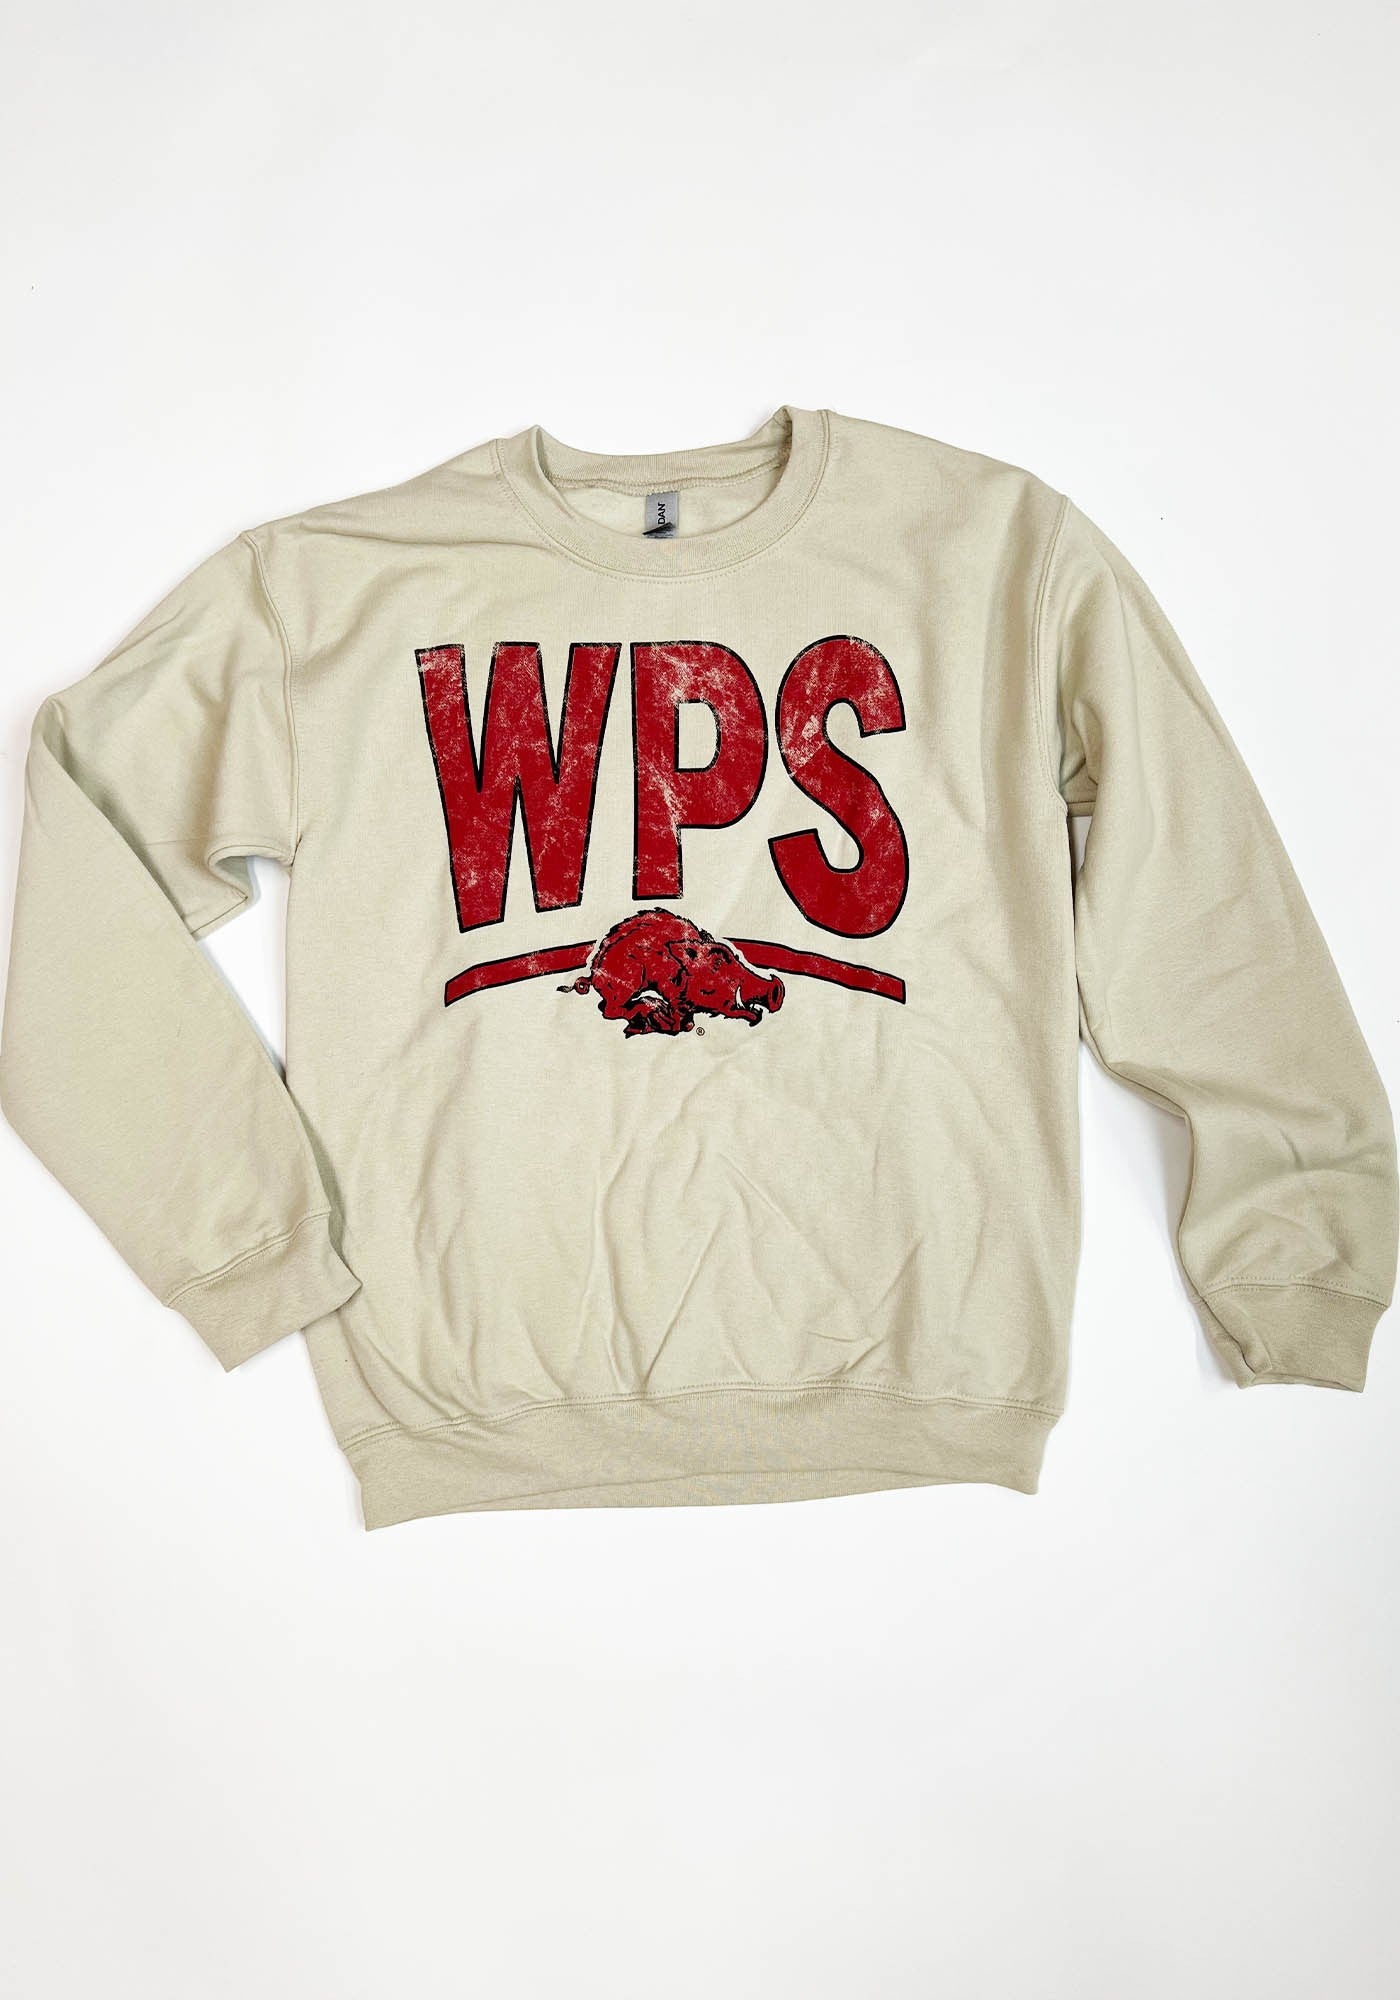 WPS Hog Sweatshirt